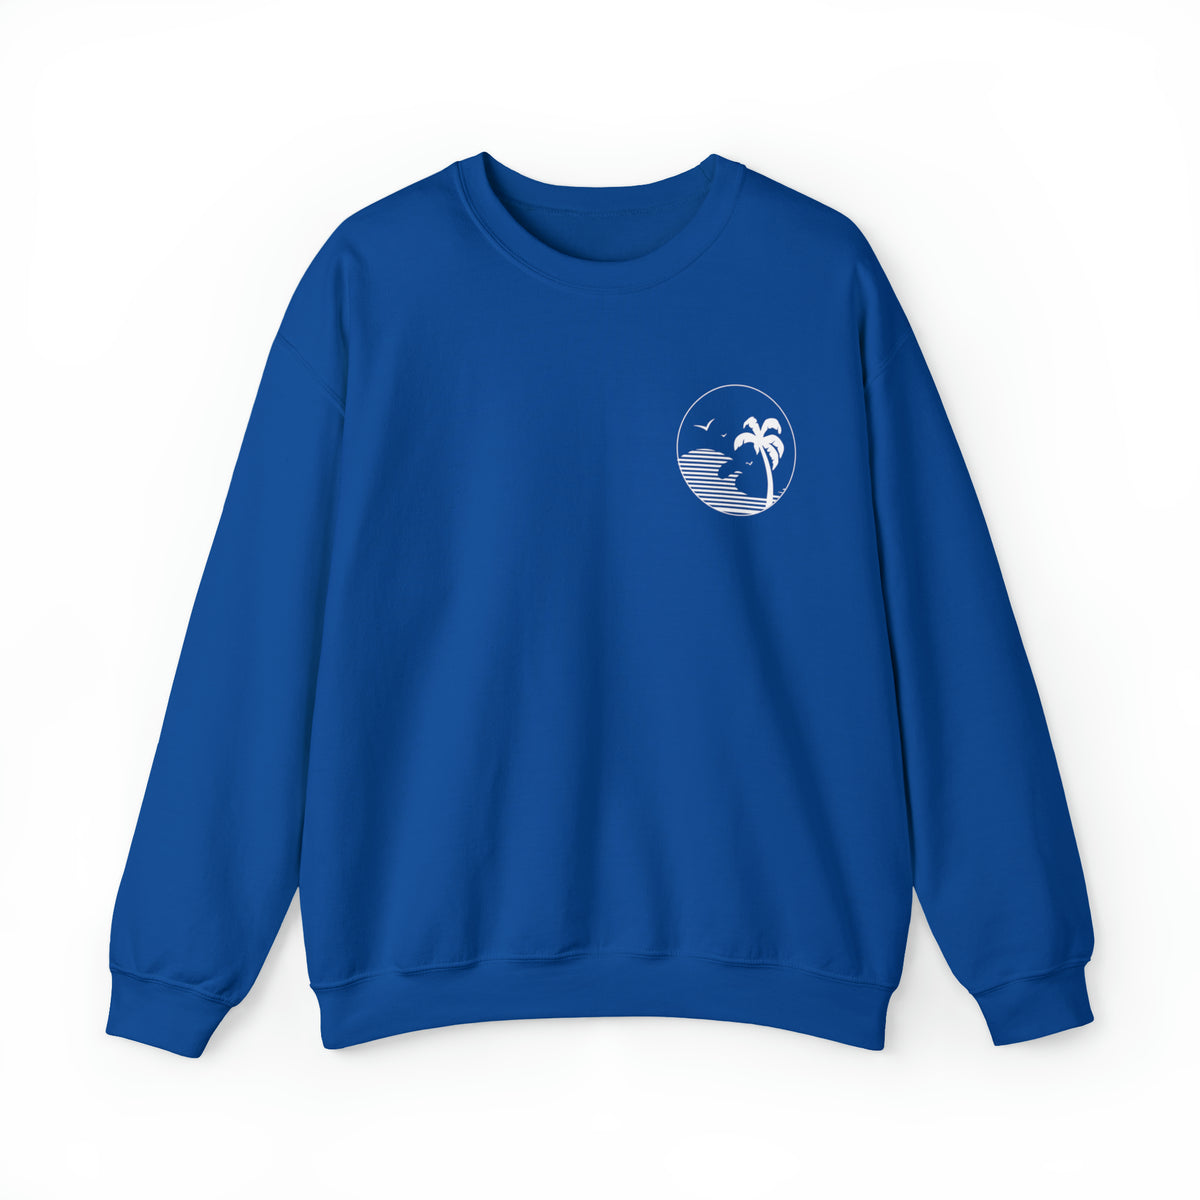 Beach Bum Shirt | Beach Life Shirt | Beach Lover Gift | Ocean Lover Gift  | Unisex Crewneck Sweatshirt